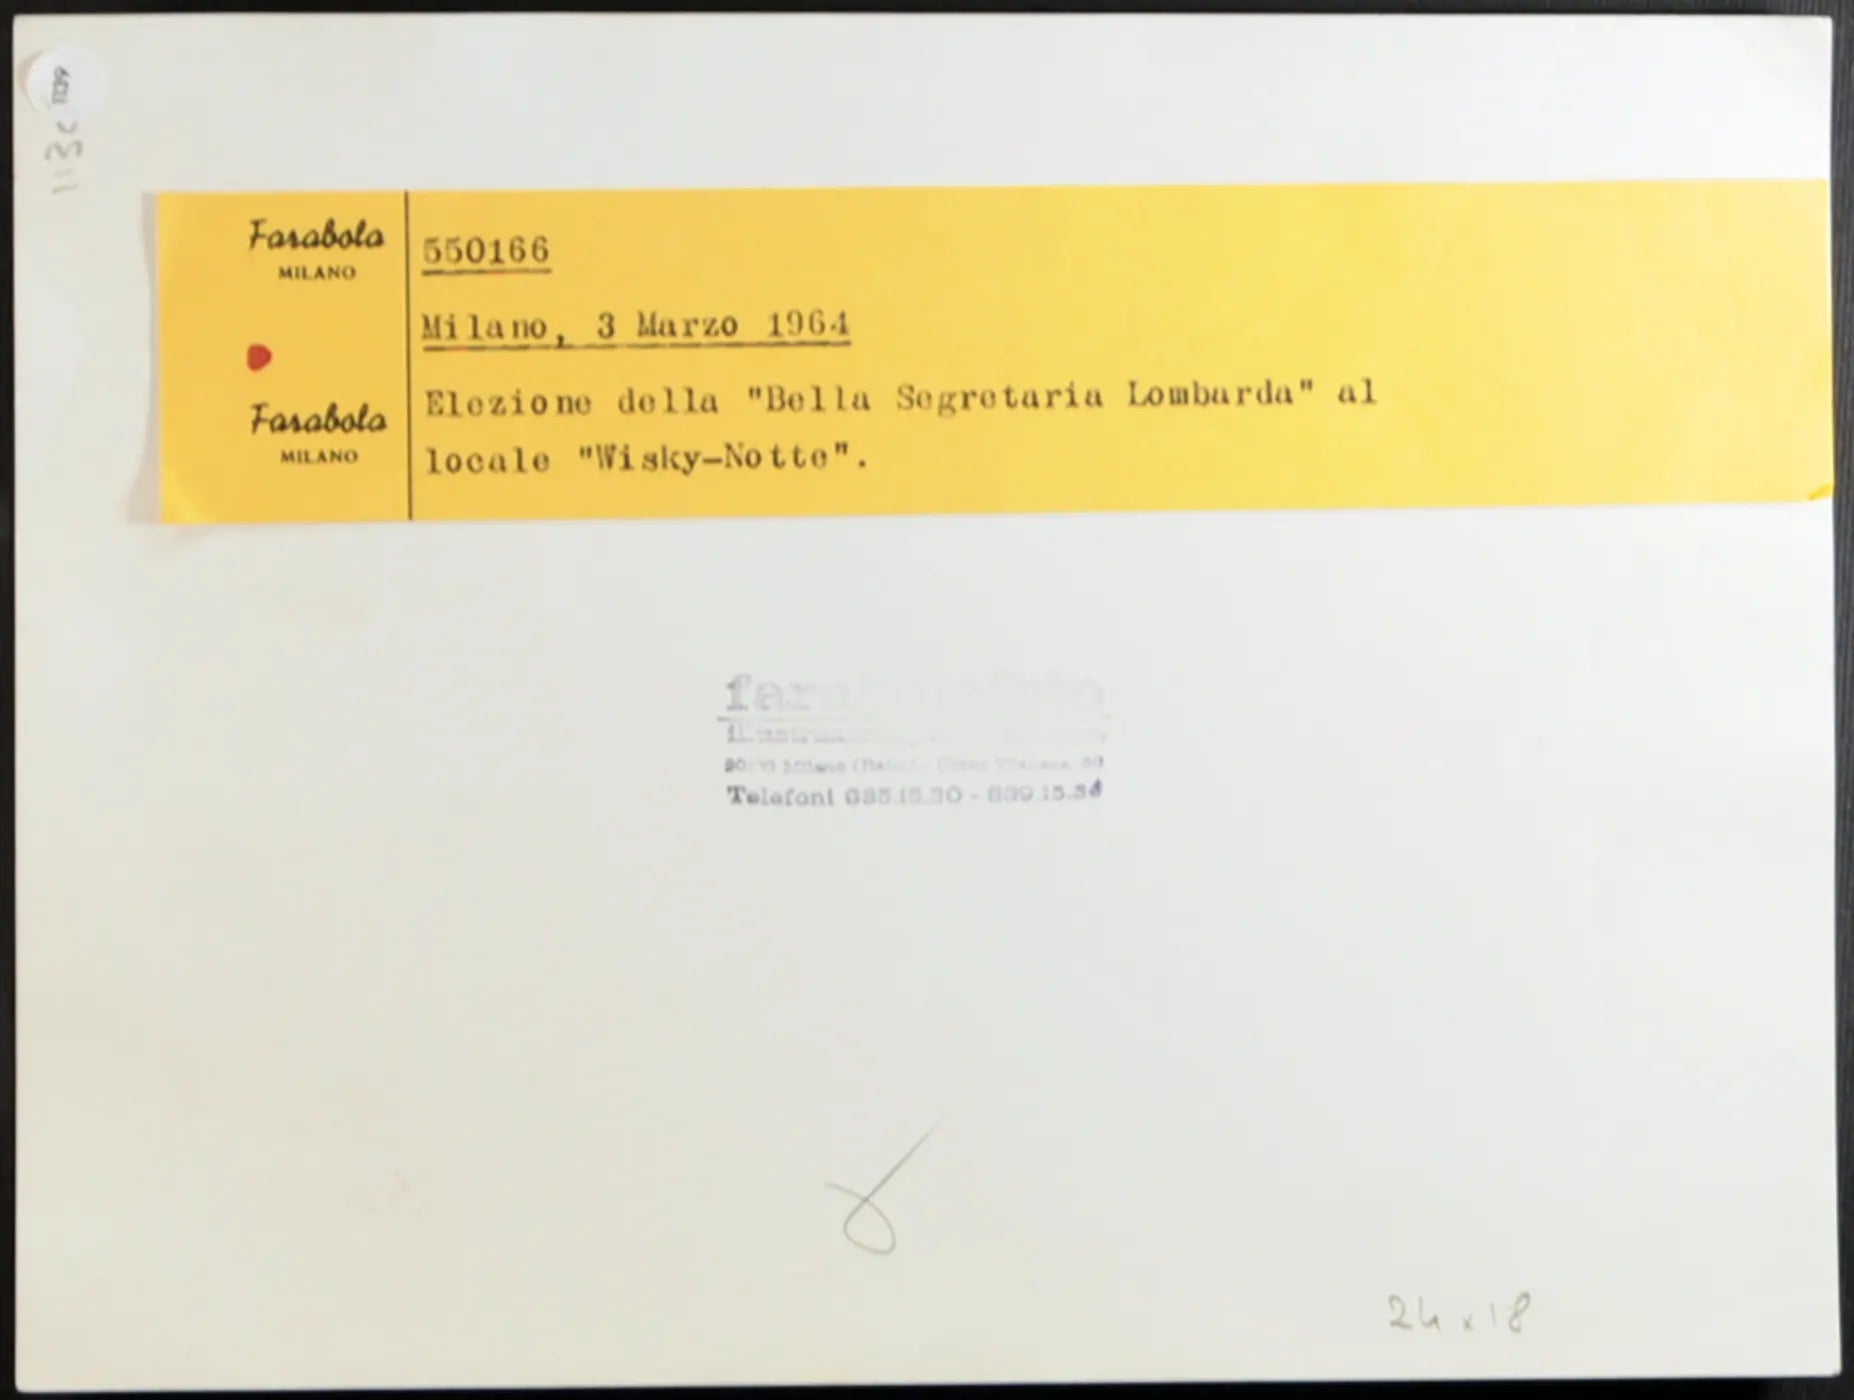 Elezione Bella Segretaria Lombarda 1964 Ft 1139 - Stampa 24x18 cm - Farabola Stampa ai sali d'argento